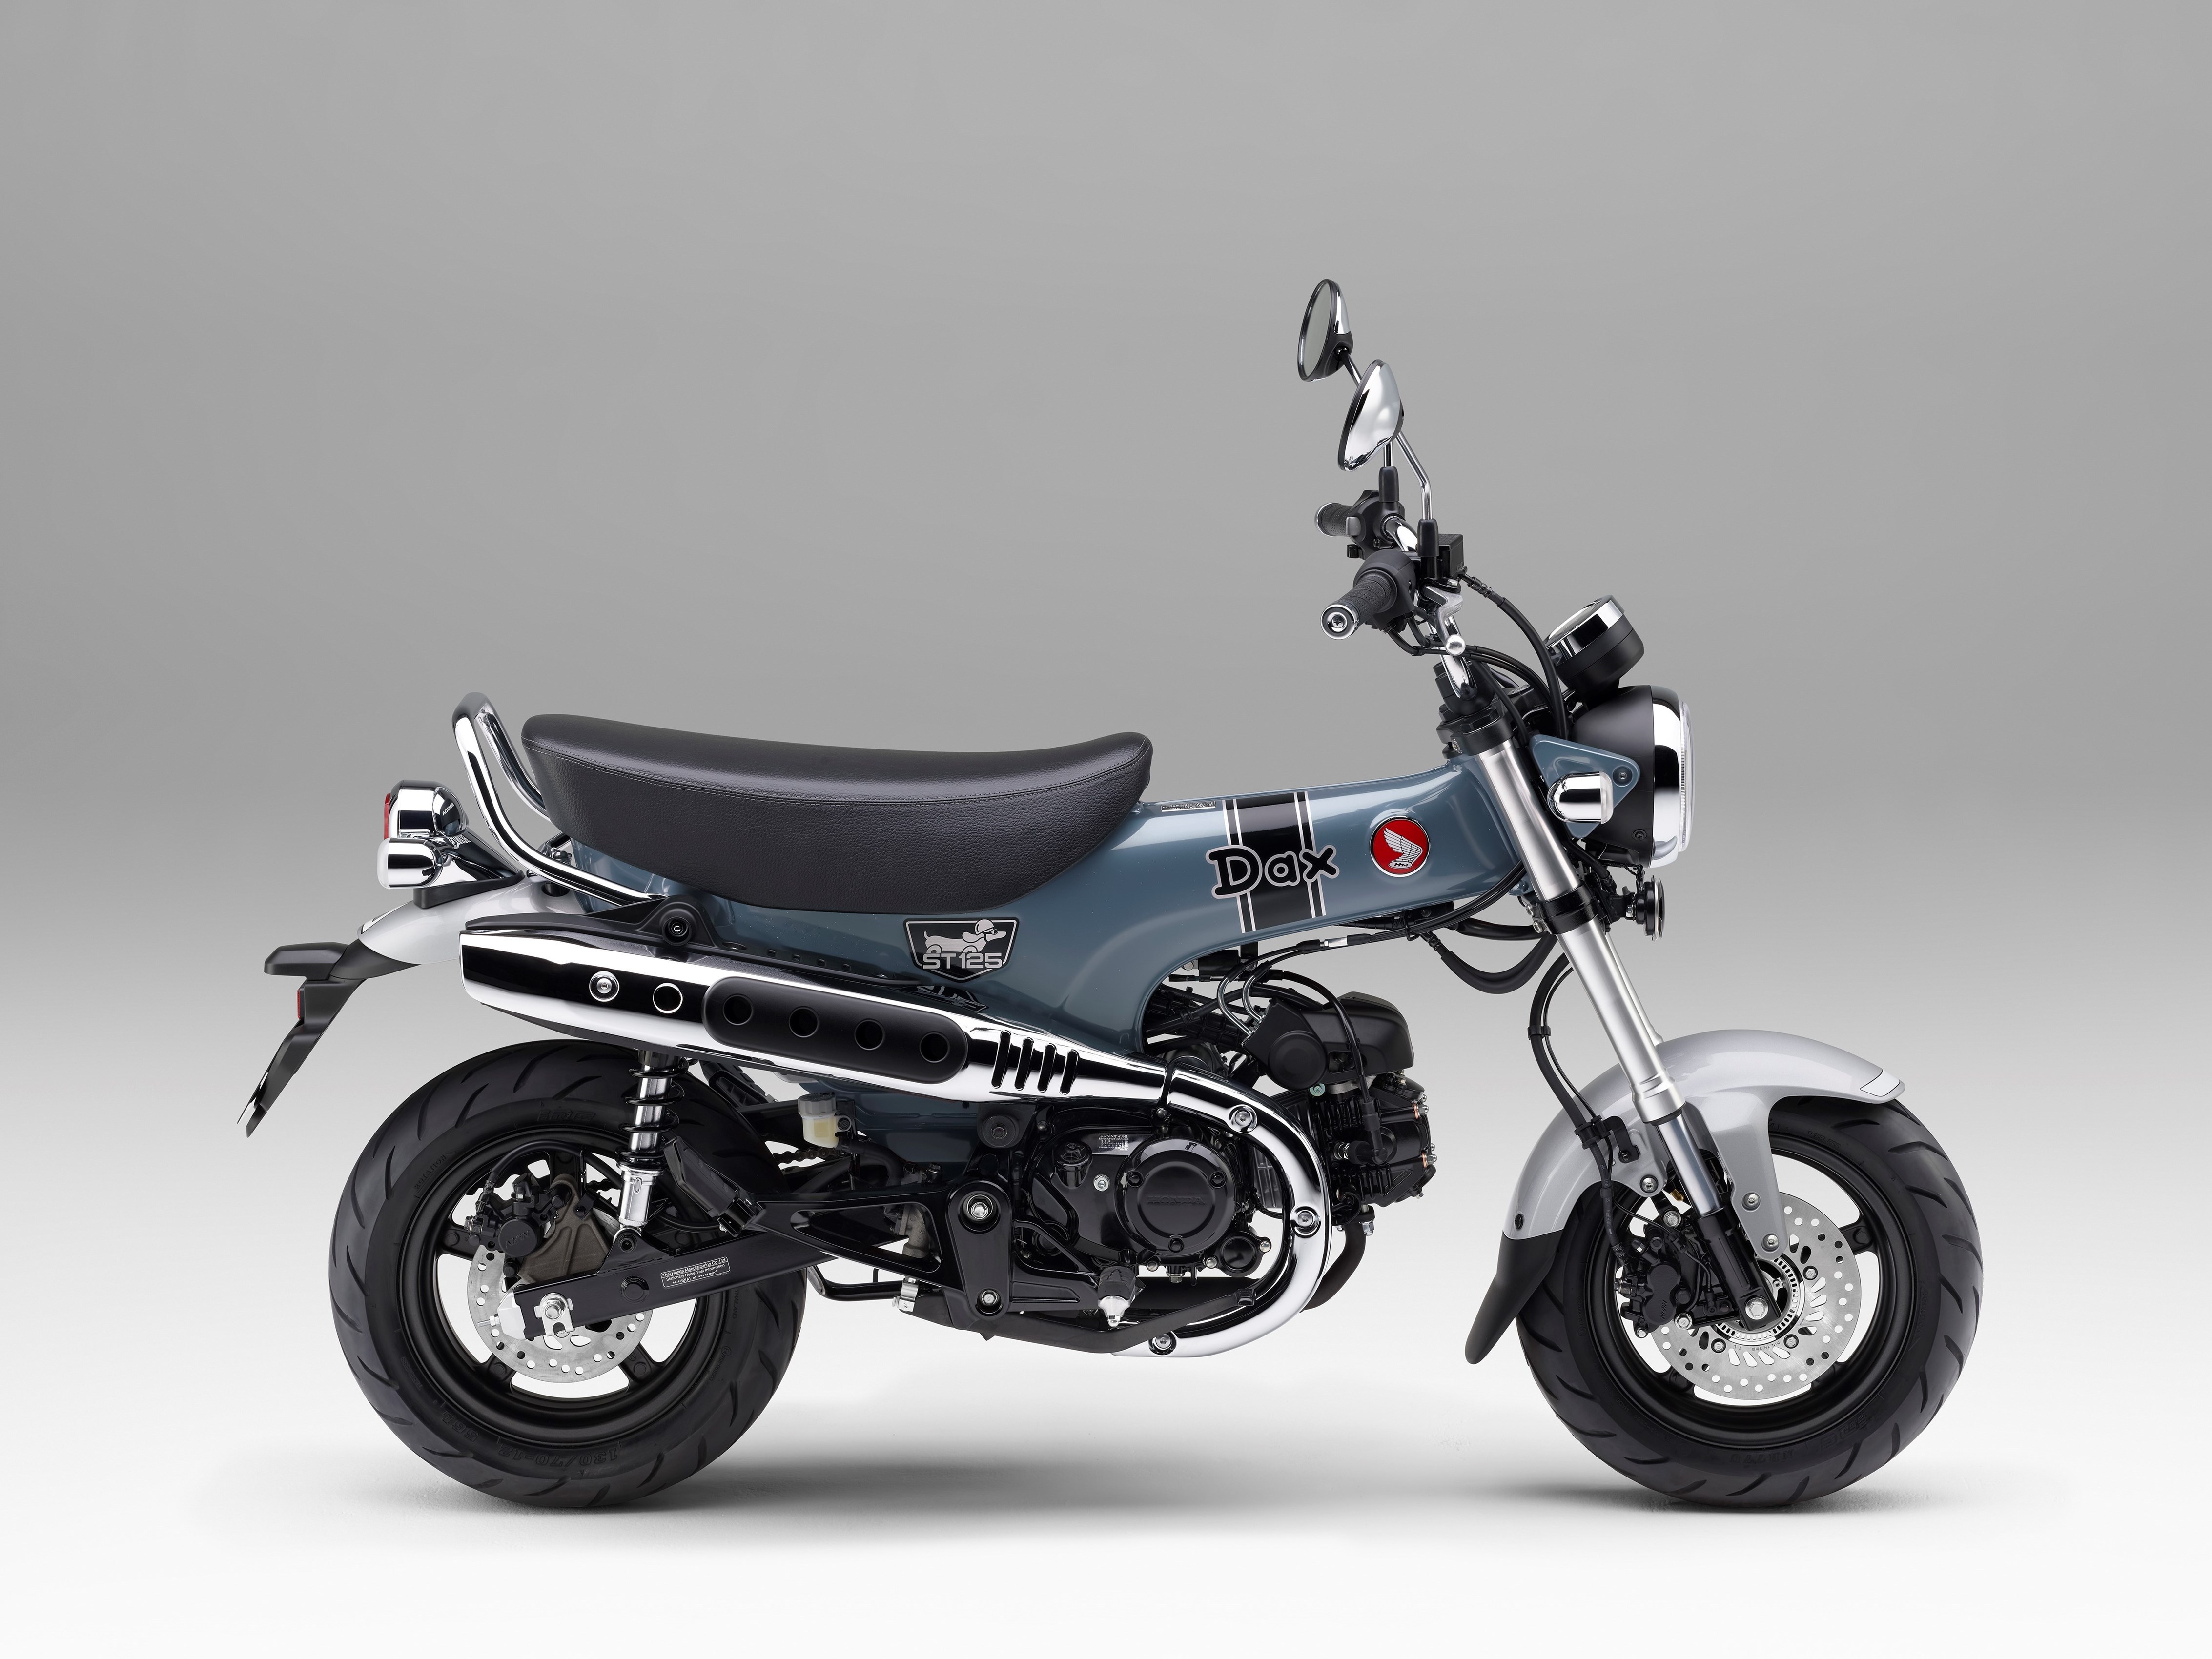 Xe máy Dax St 50cc mới 100  Độ cực ngầu của khách hàng tại Xe Bảo Nam   YouTube